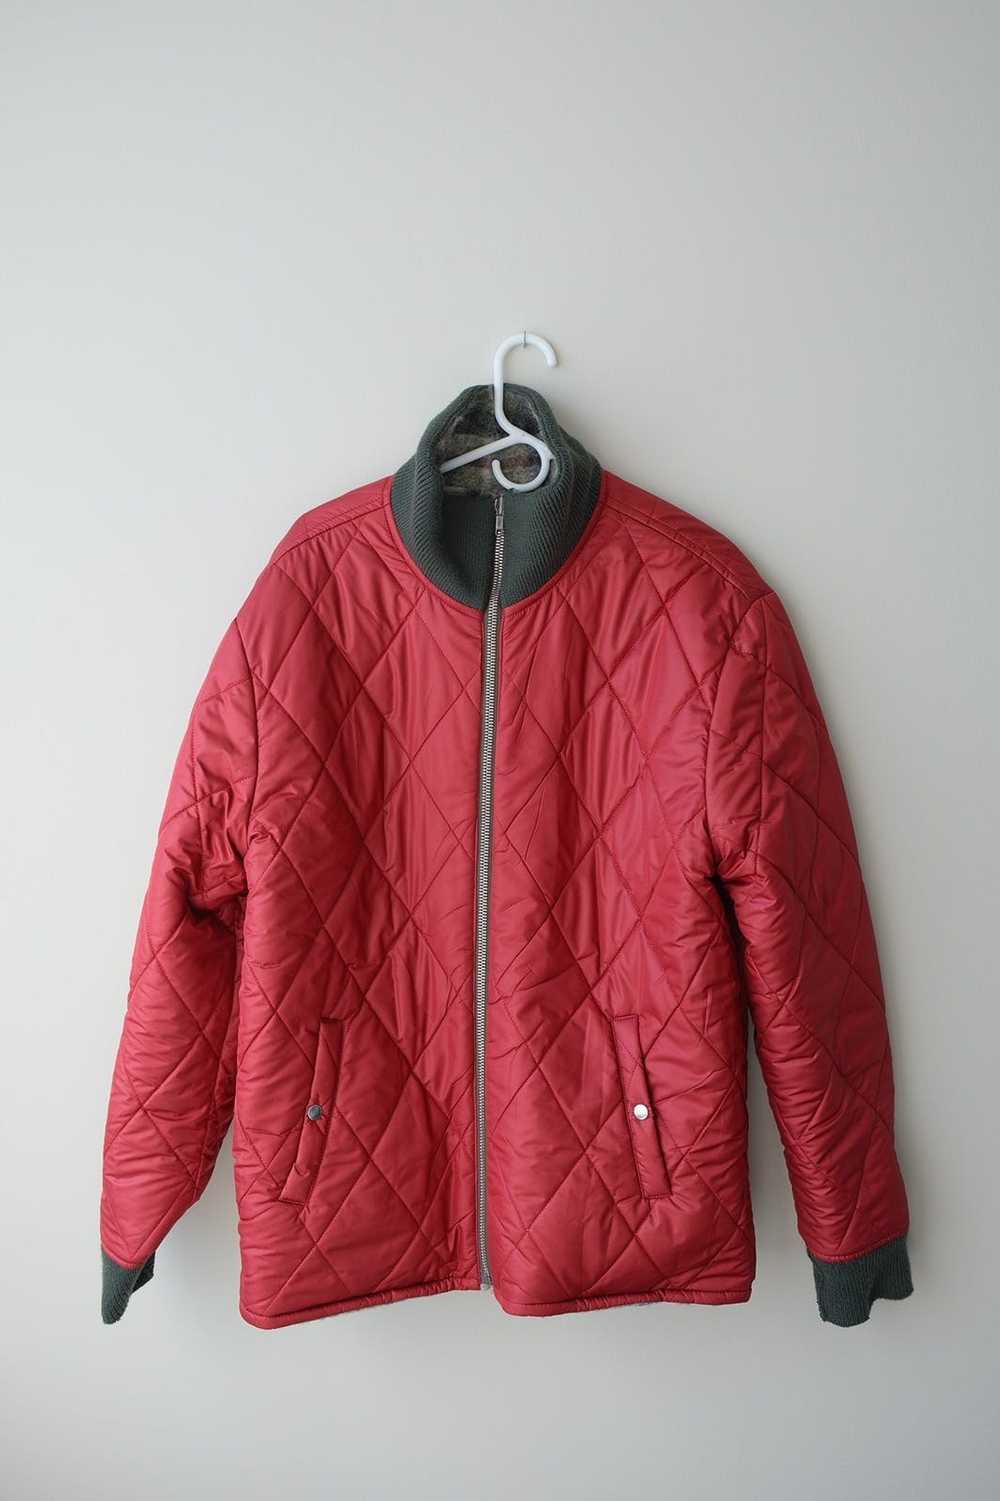 Isabel Marant Reversible Wool Jacket - image 3